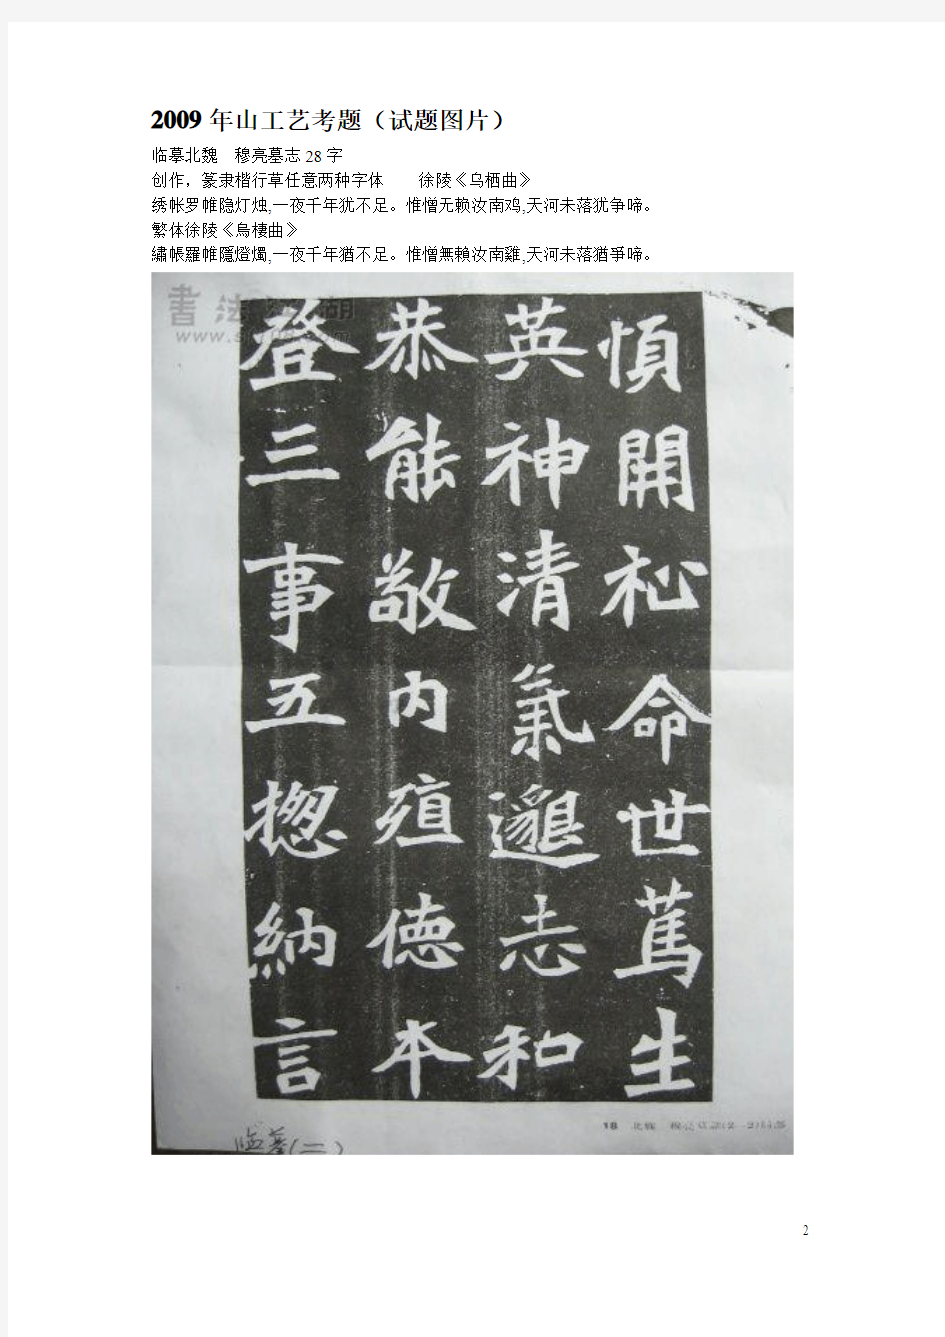 2009年书法高考试题汇总打印版,西安书法高考之巷陌烟霞呕心沥血提供